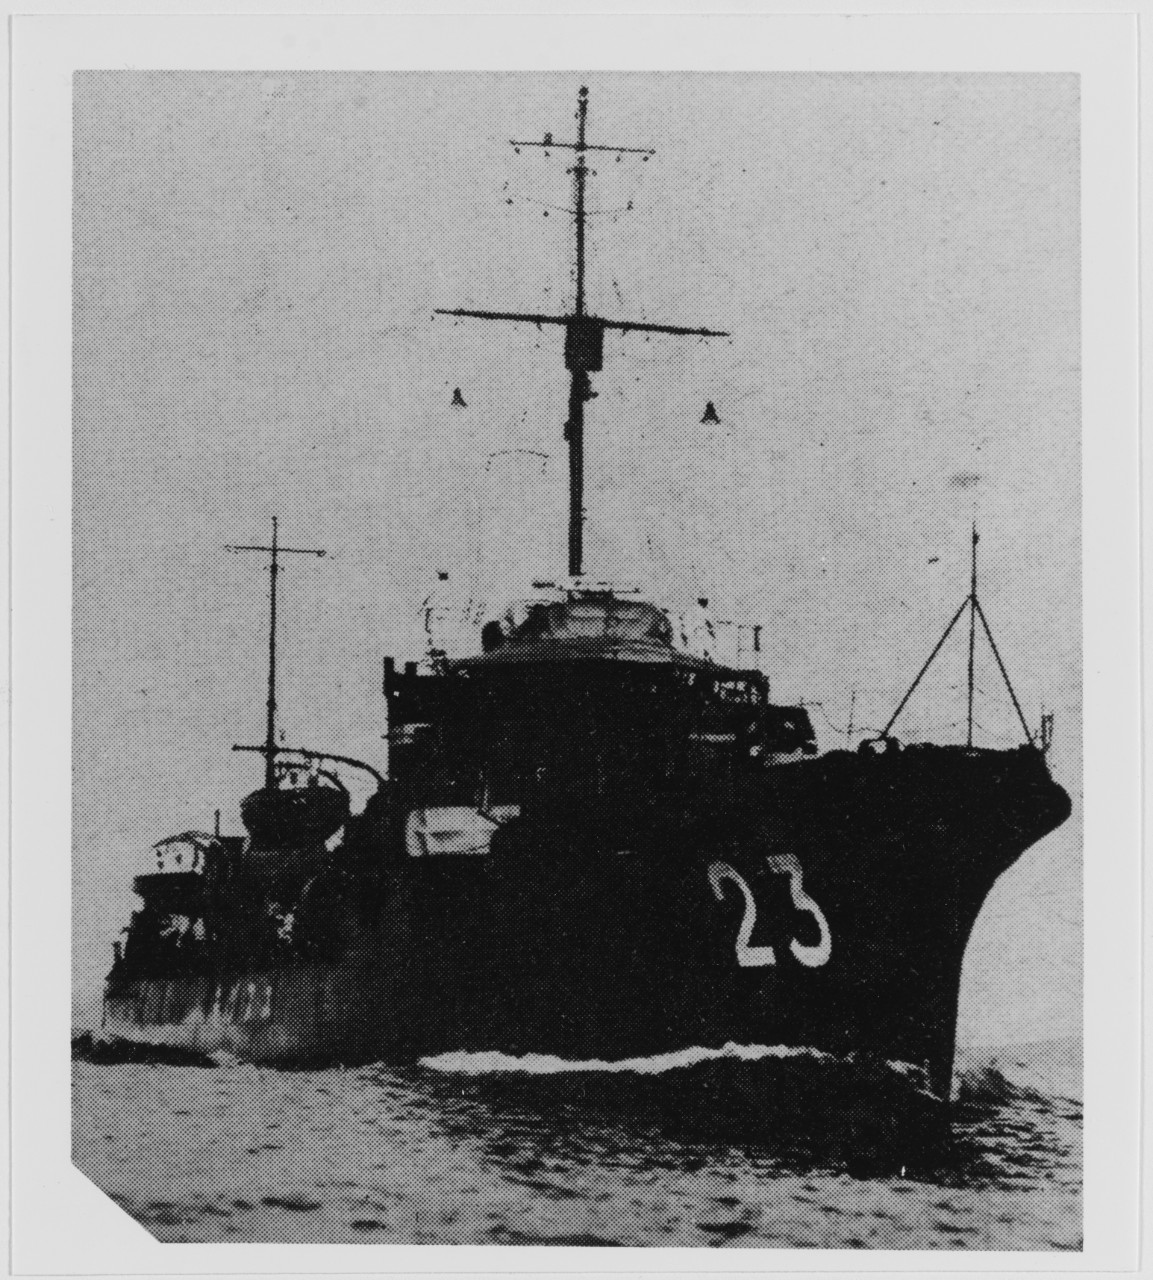 UZUKI (Japanese Destroyer, 1925)